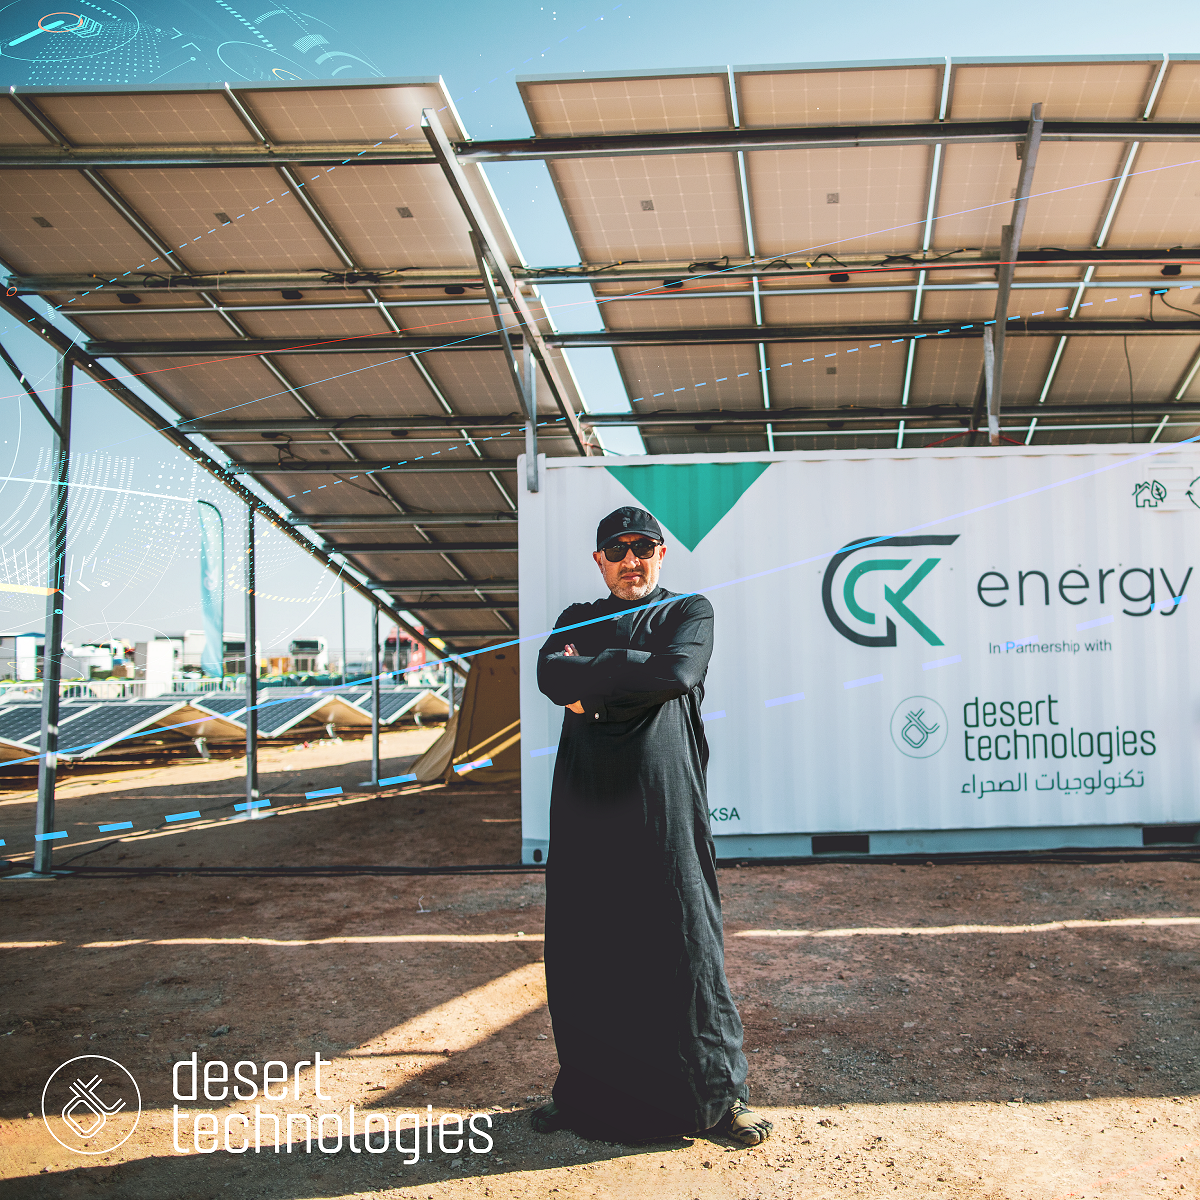 طرح حاويات الطاقة الشمسية صحارى لأول مرة في السعودية